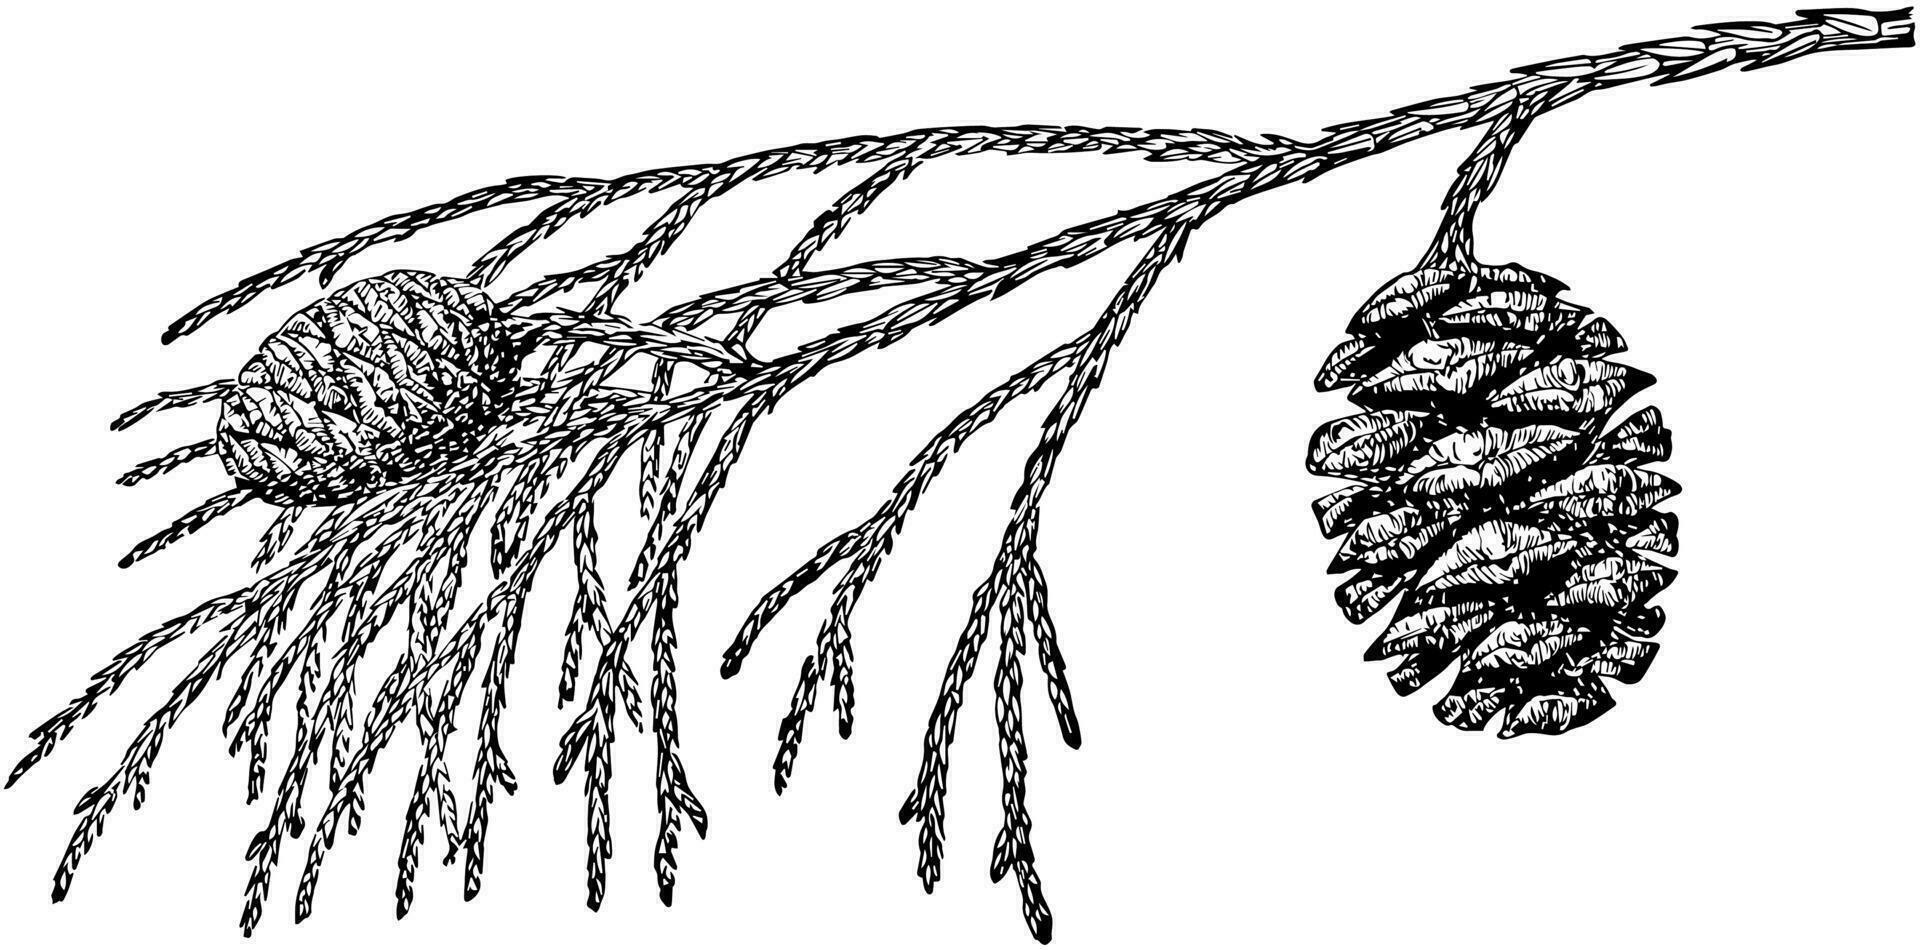 pino cono de grande árbol Clásico ilustración. vector